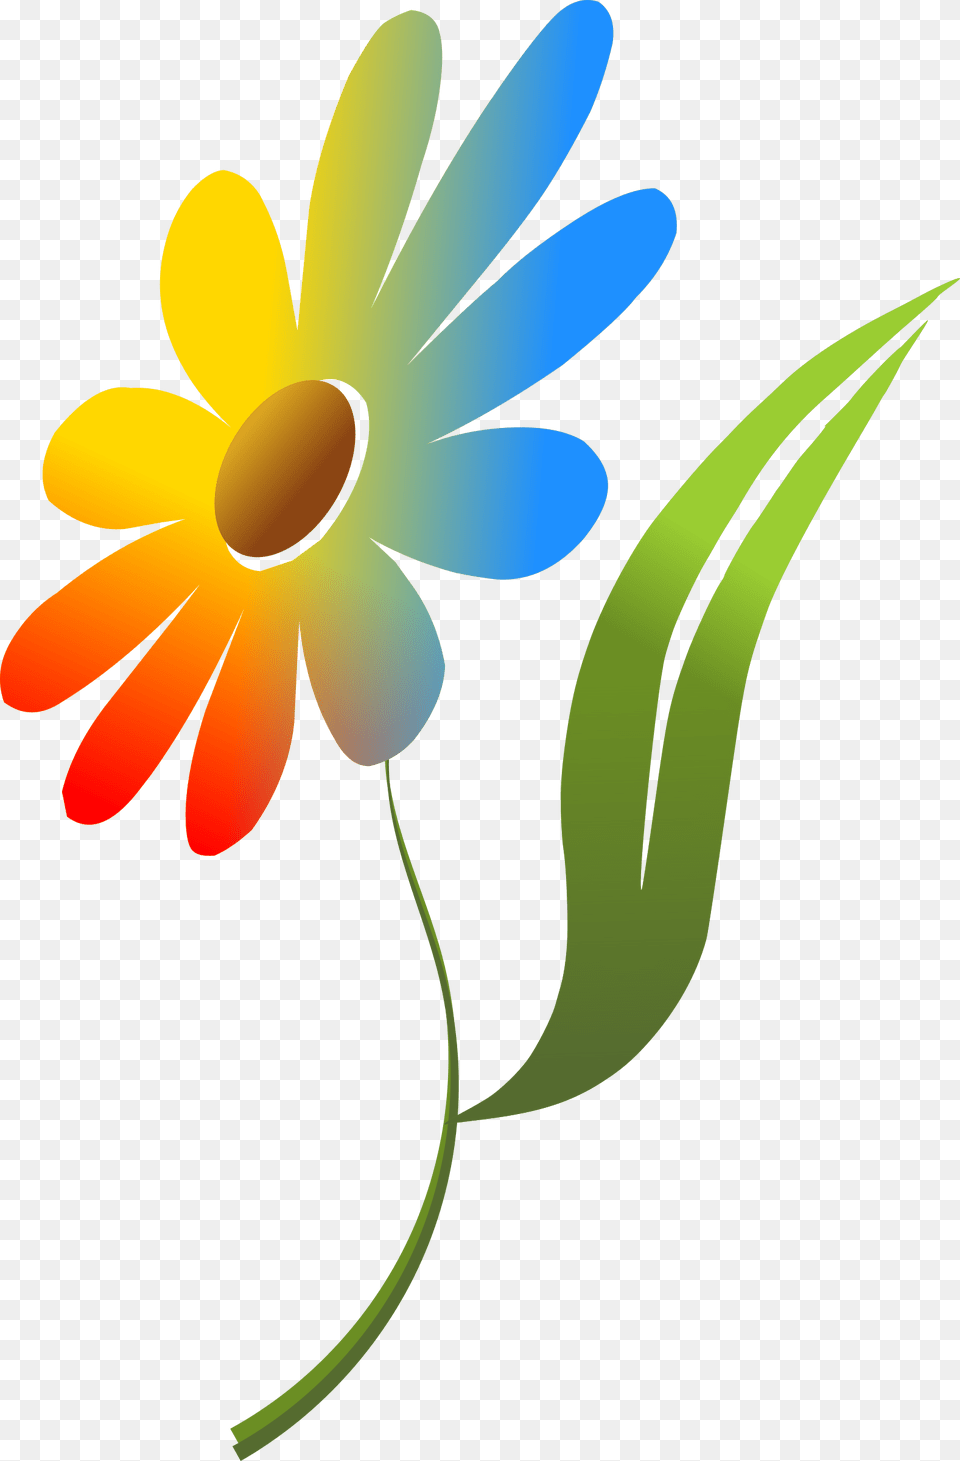 Clipart, Daisy, Plant, Flower, Petal Free Transparent Png